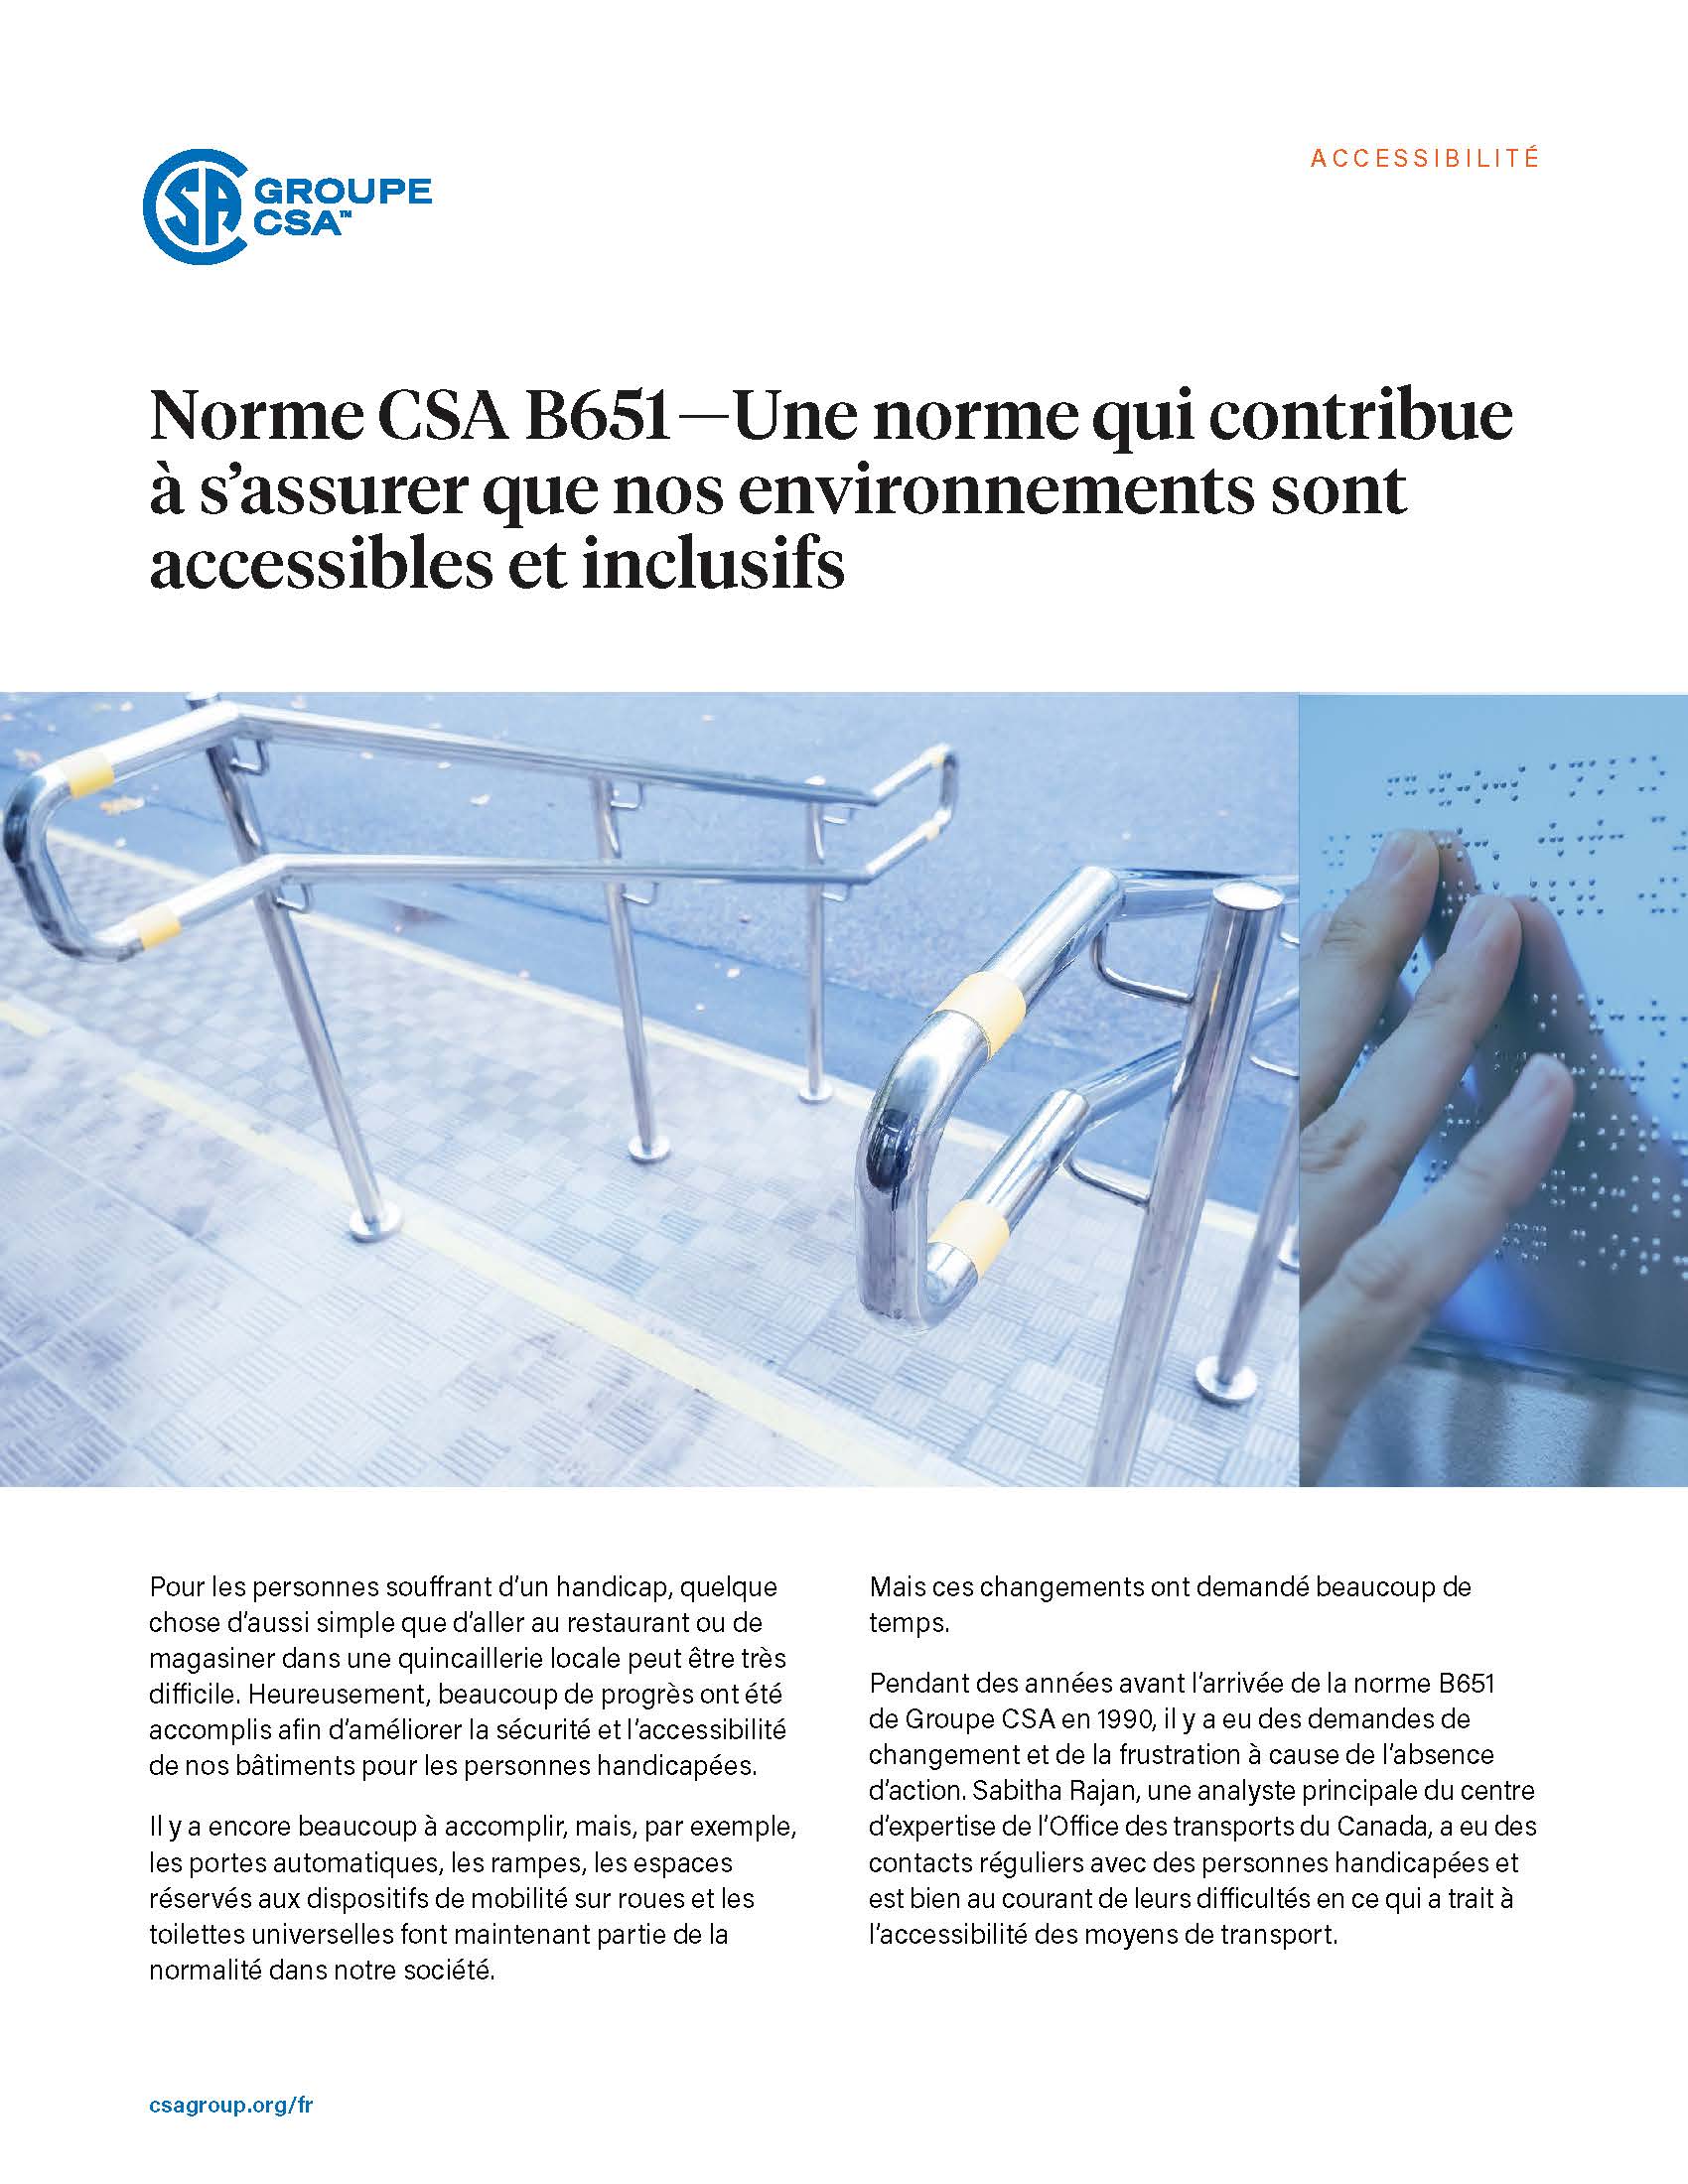 Page titre pour l’étude de cas “Norme CSA B651 — Une norme qui contribue à s’assurer que nos environnements sont accessibles et inclusifs.